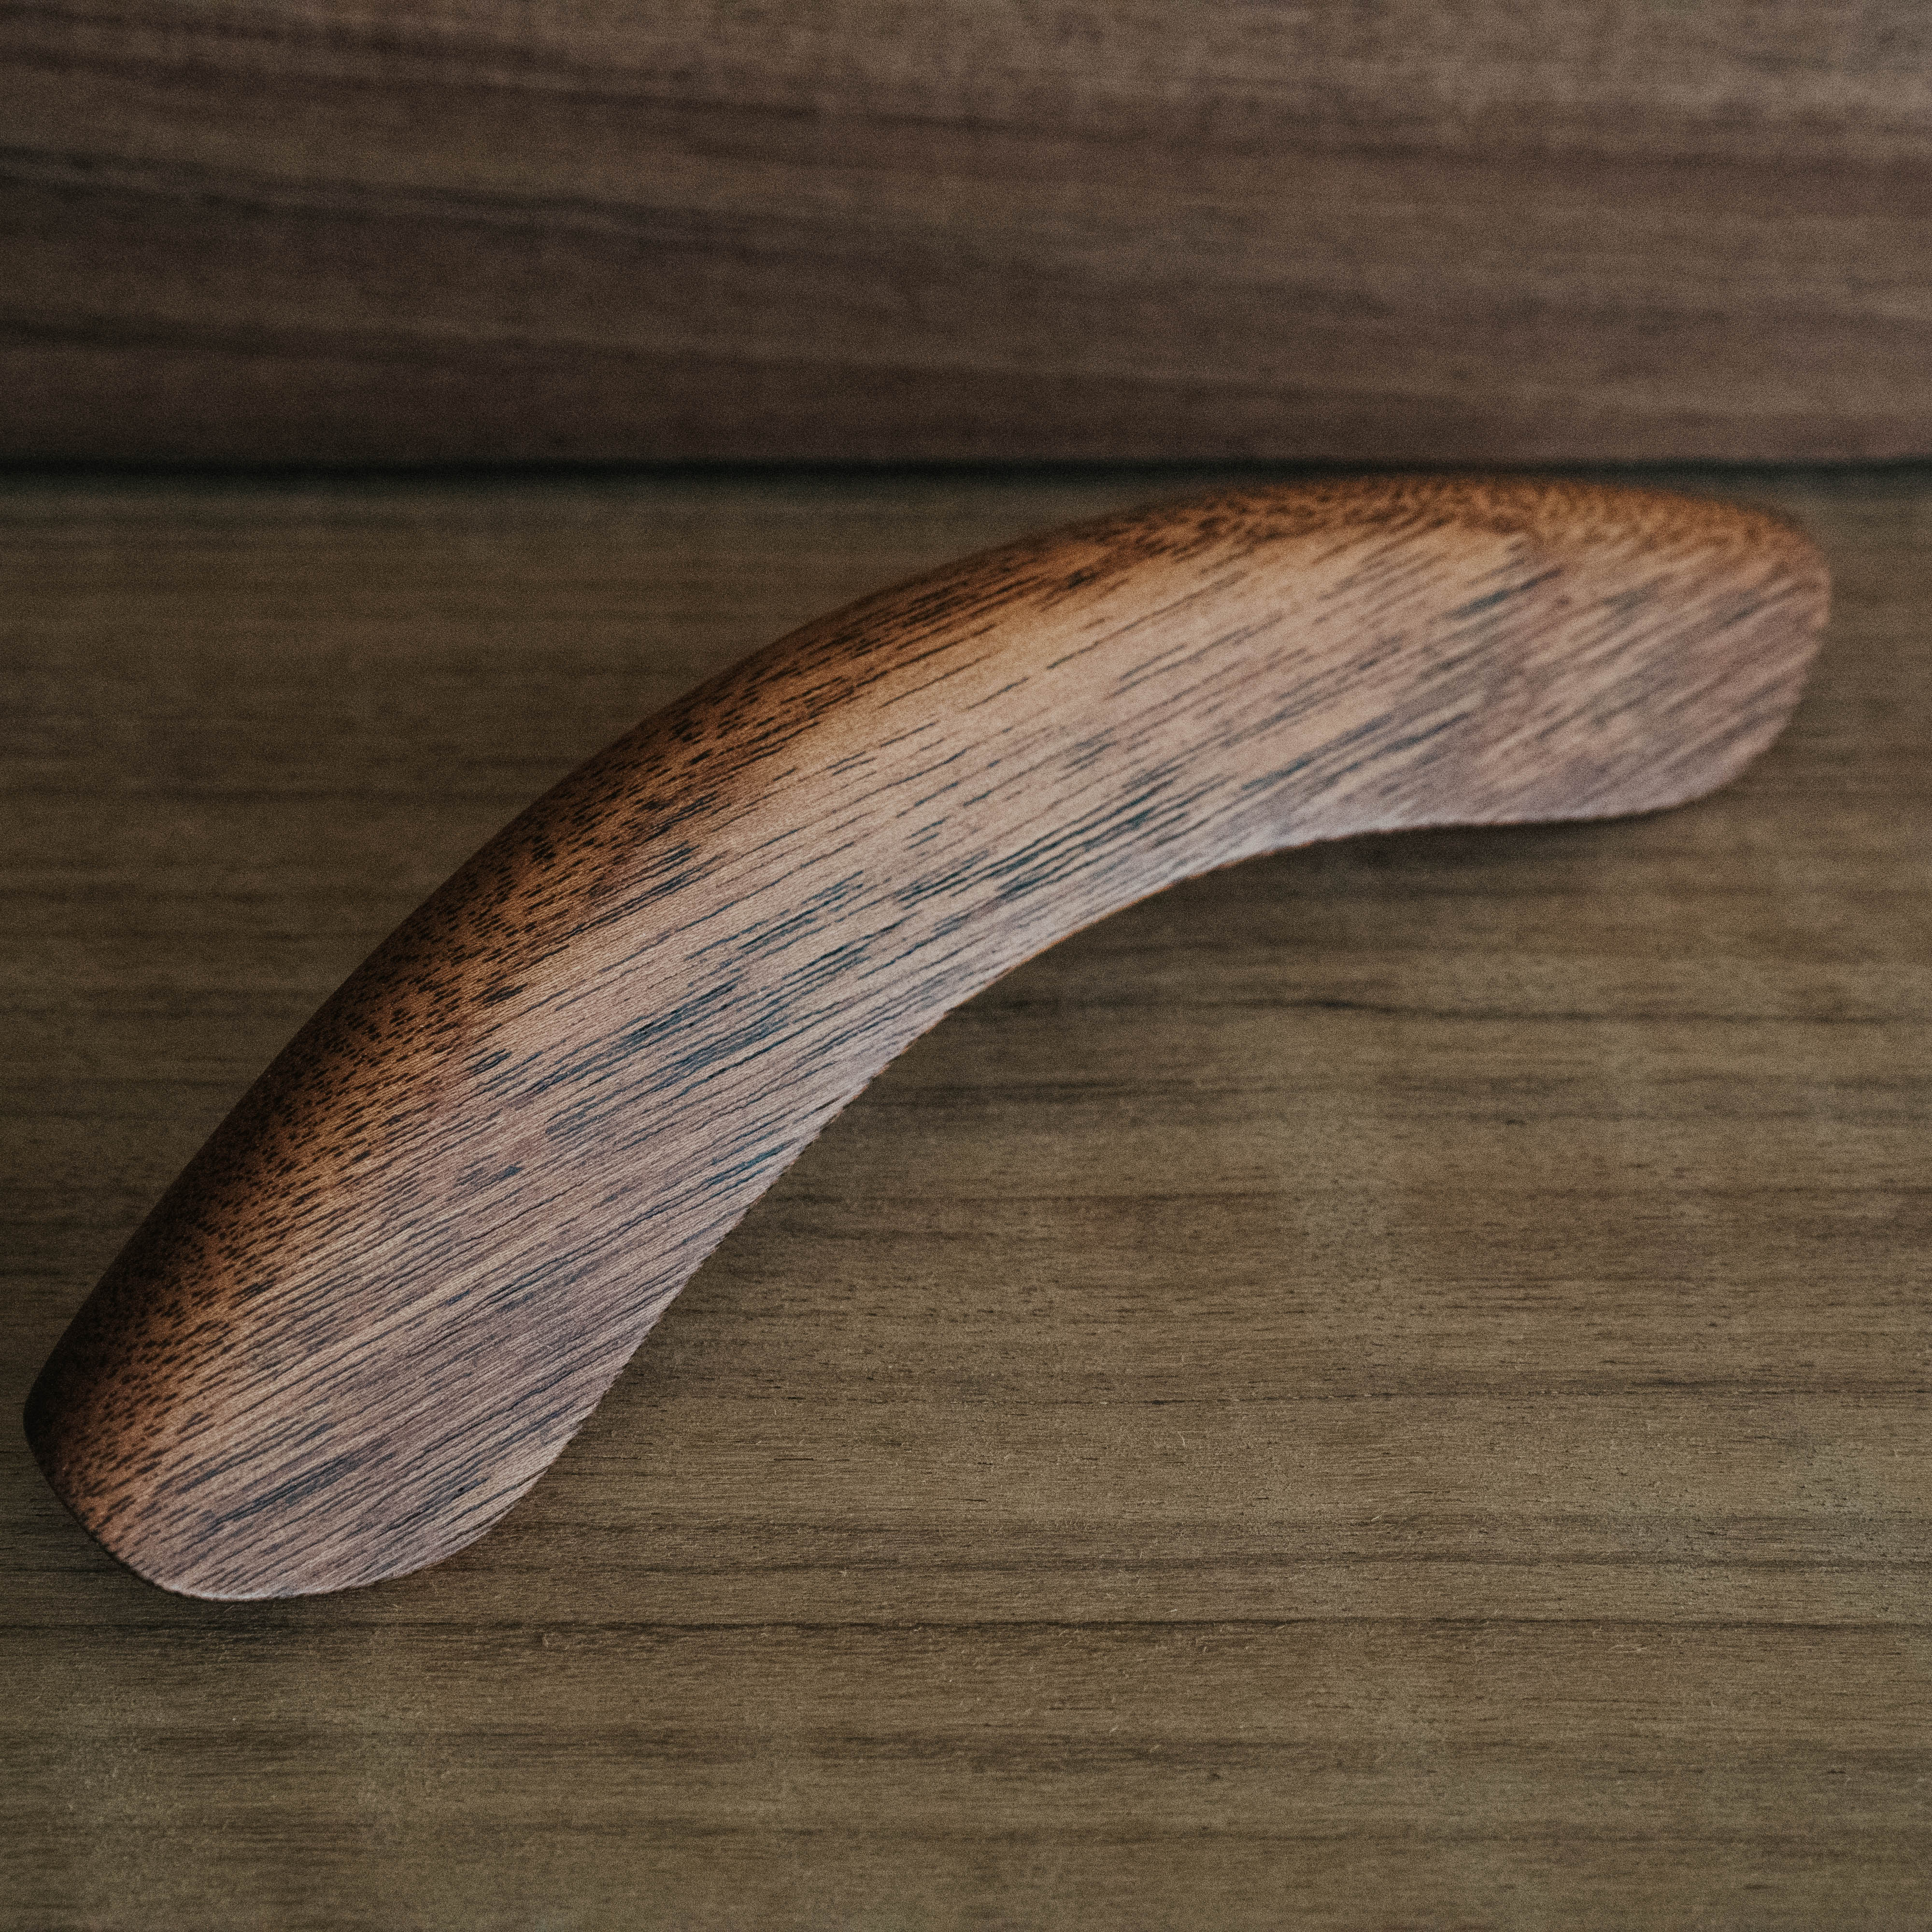 Deering Wooden Banjo Armrest